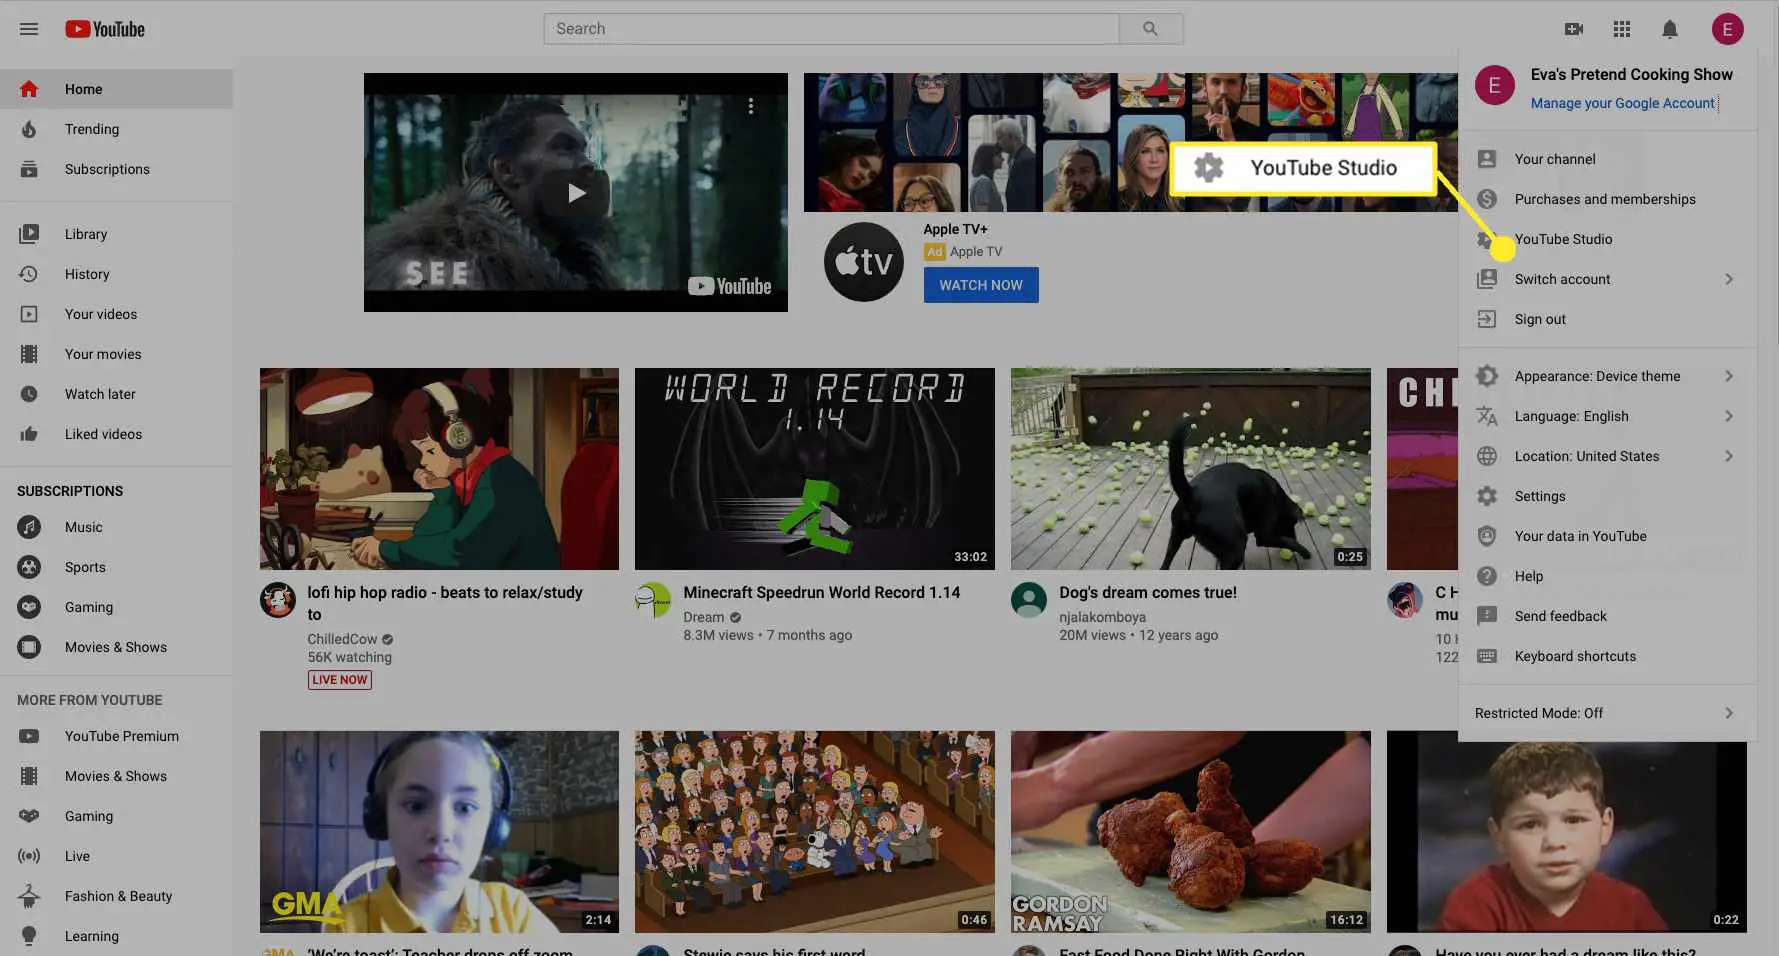 Selecione YouTube Studio para acessar o painel de seu canal.